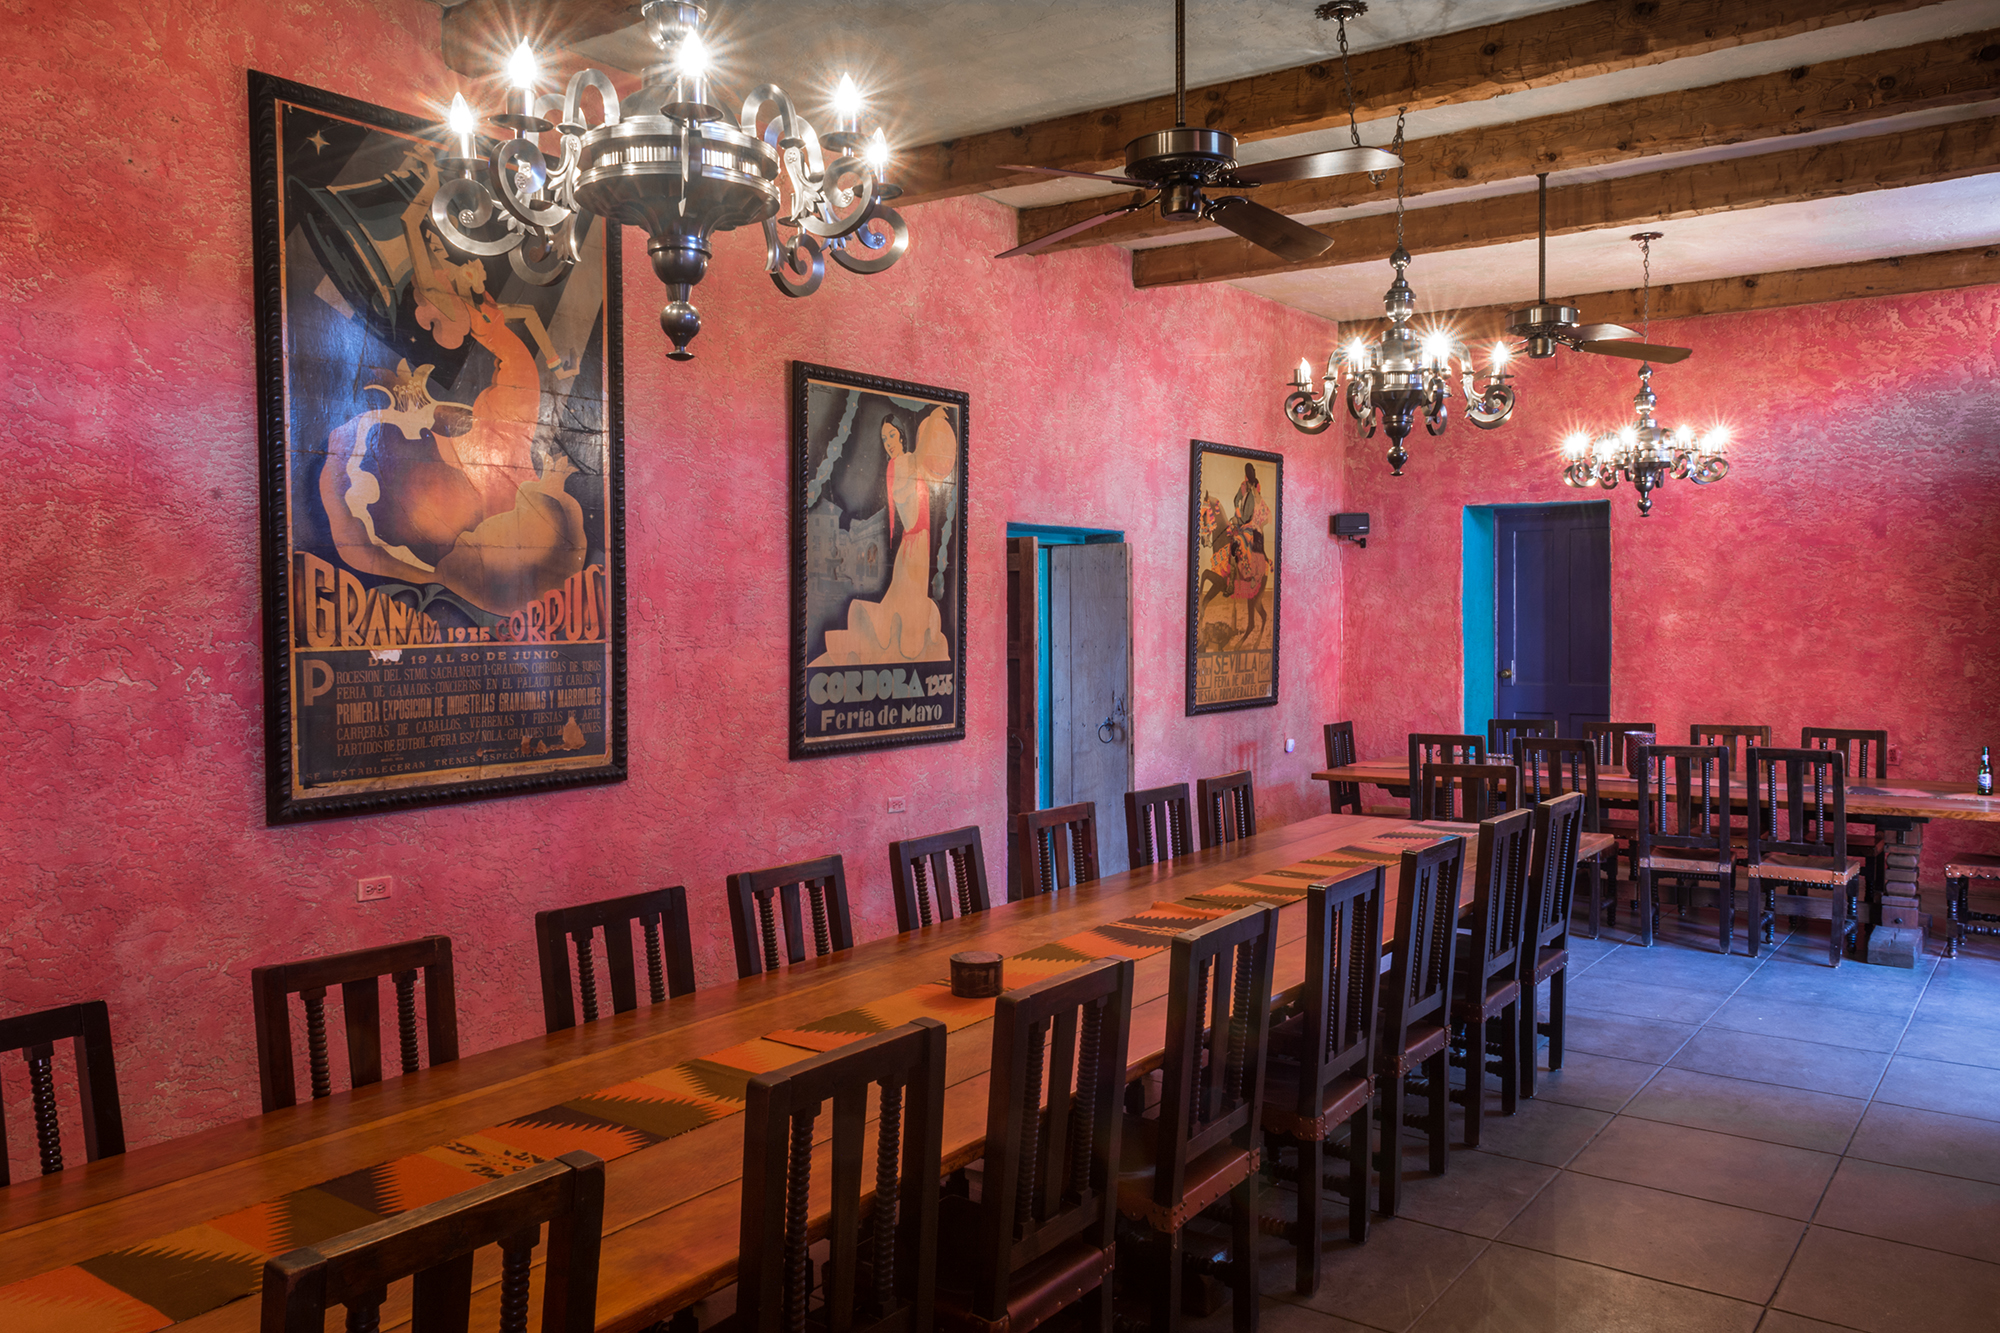 The dining room at Rancho de la Osa.